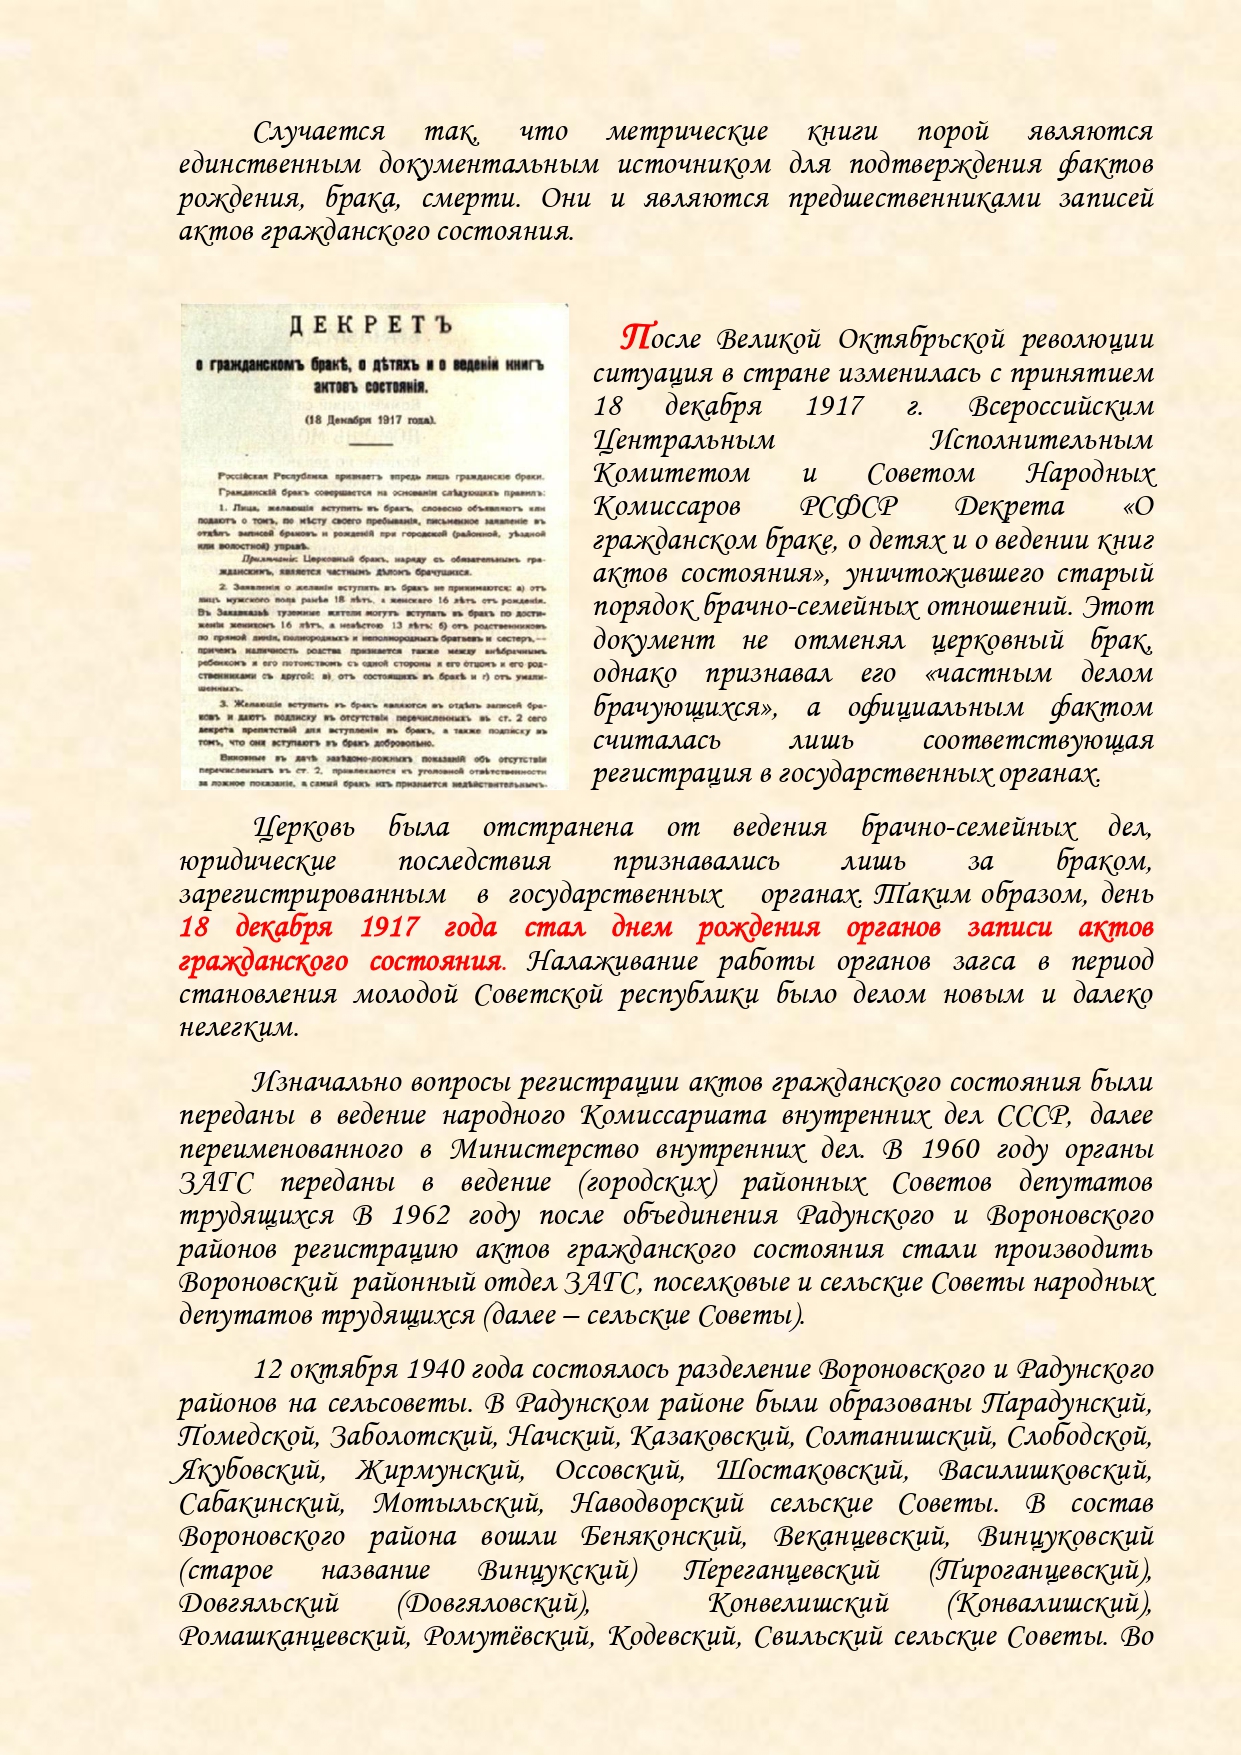 История органов загса Вороновского района с изменениями (1)_page-0002.jpg